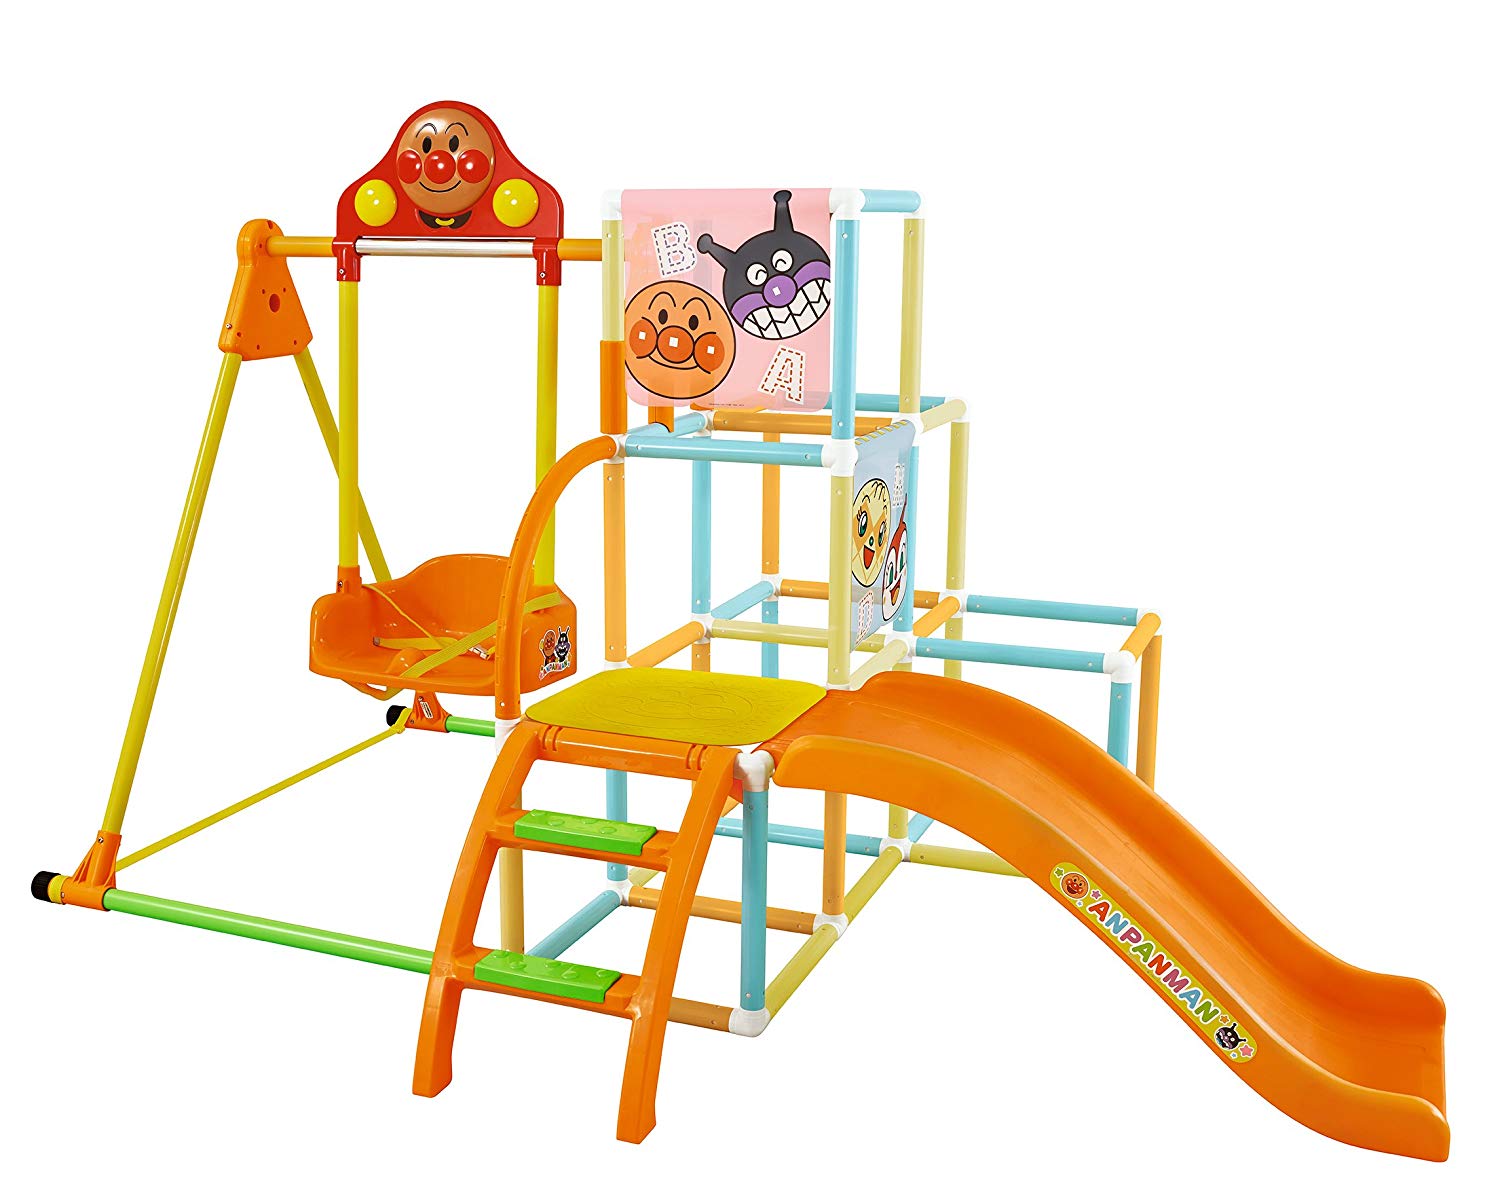 アンパンマン うちの子天才 ブランコパークdx 遊具シリーズ アンパンマン 株式会社 アガツマ